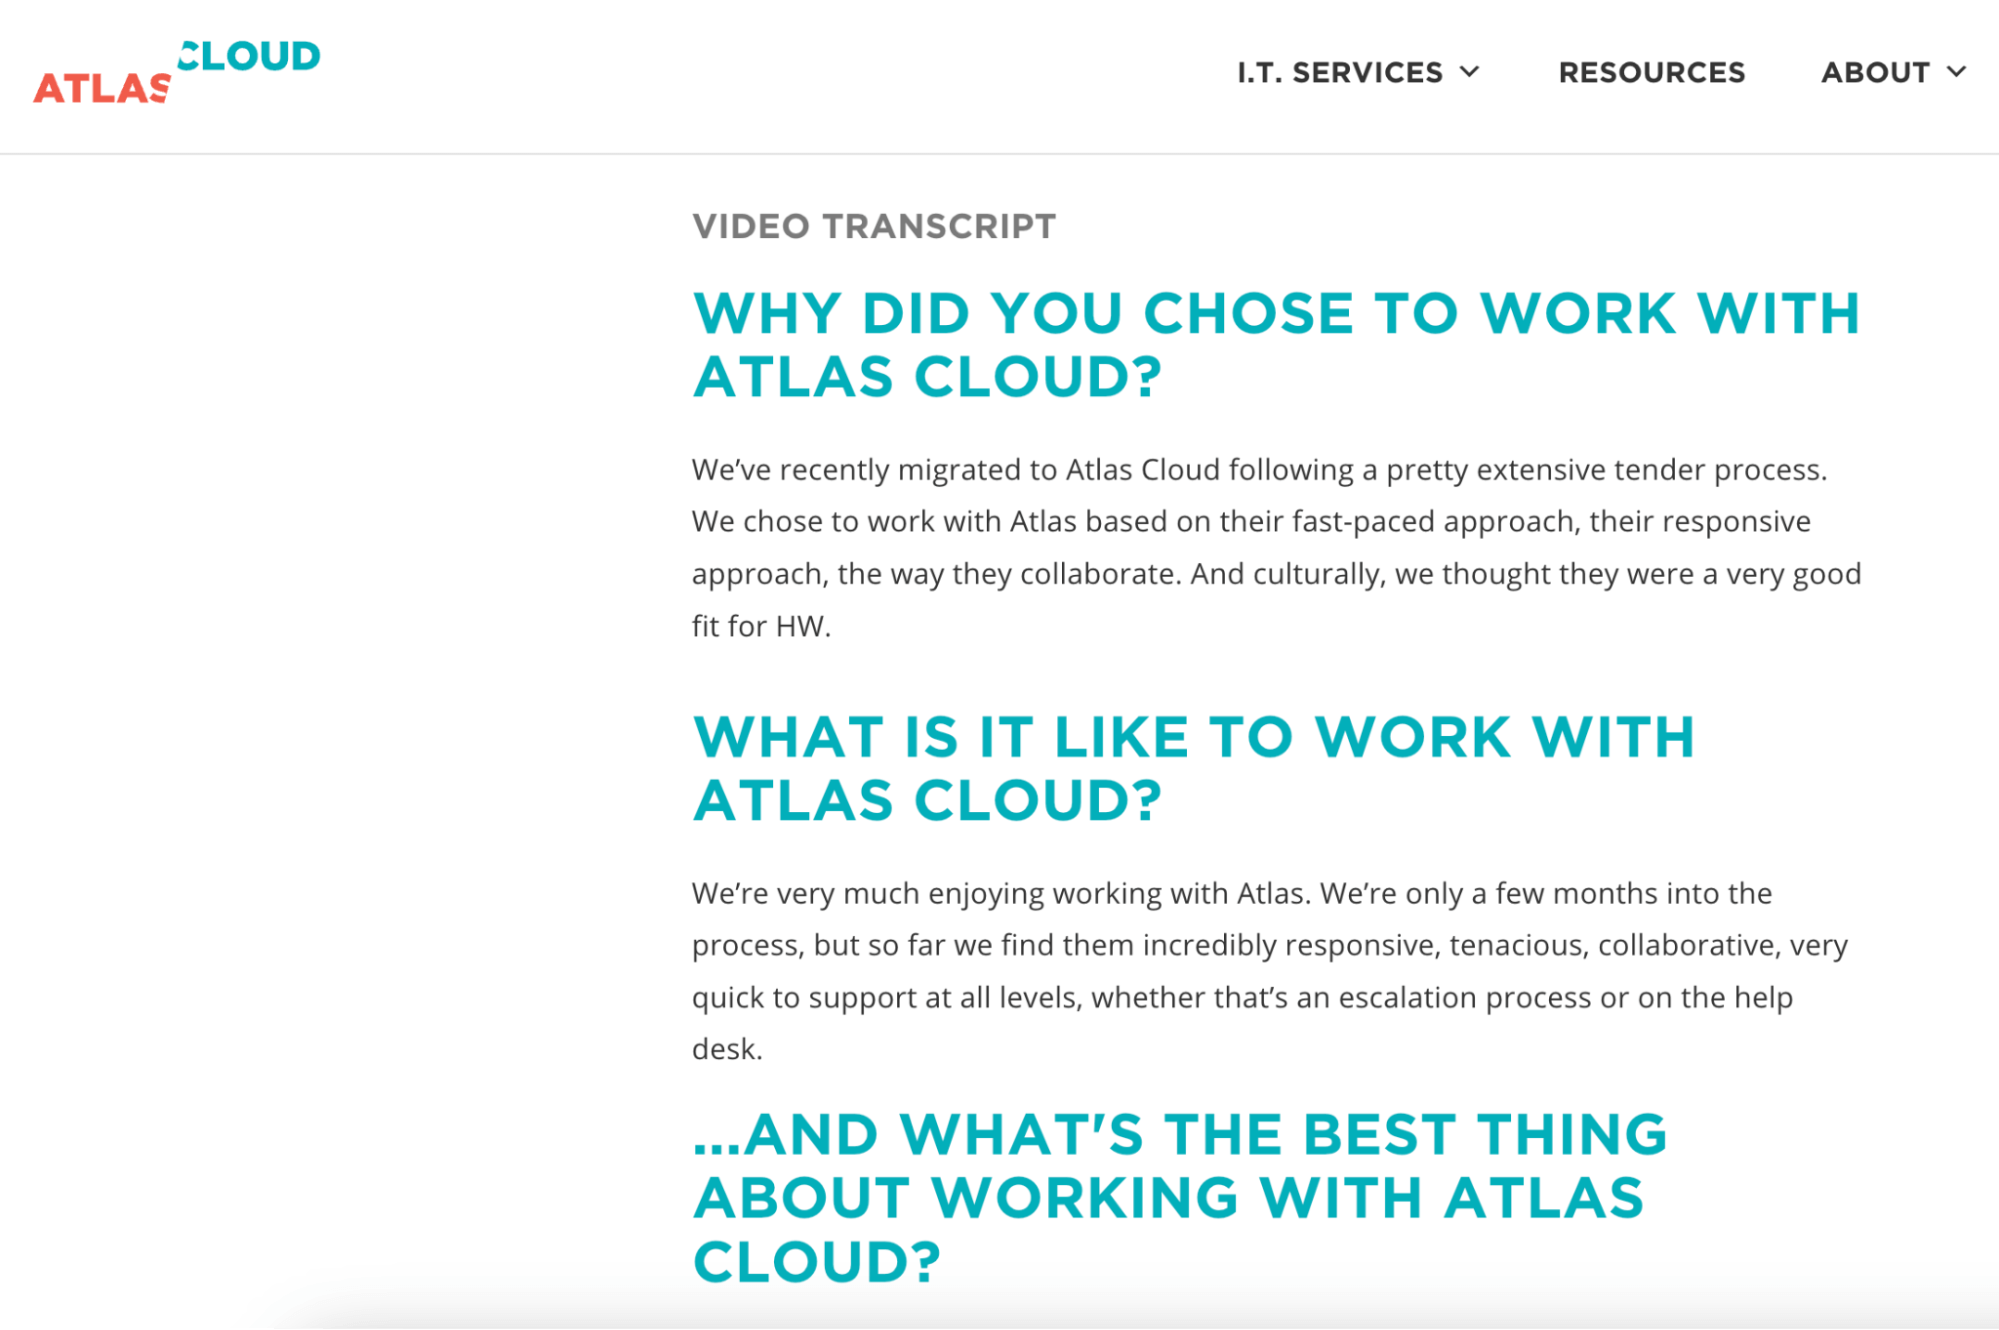 Atlas Cloud uses video transcripts for case studies. 